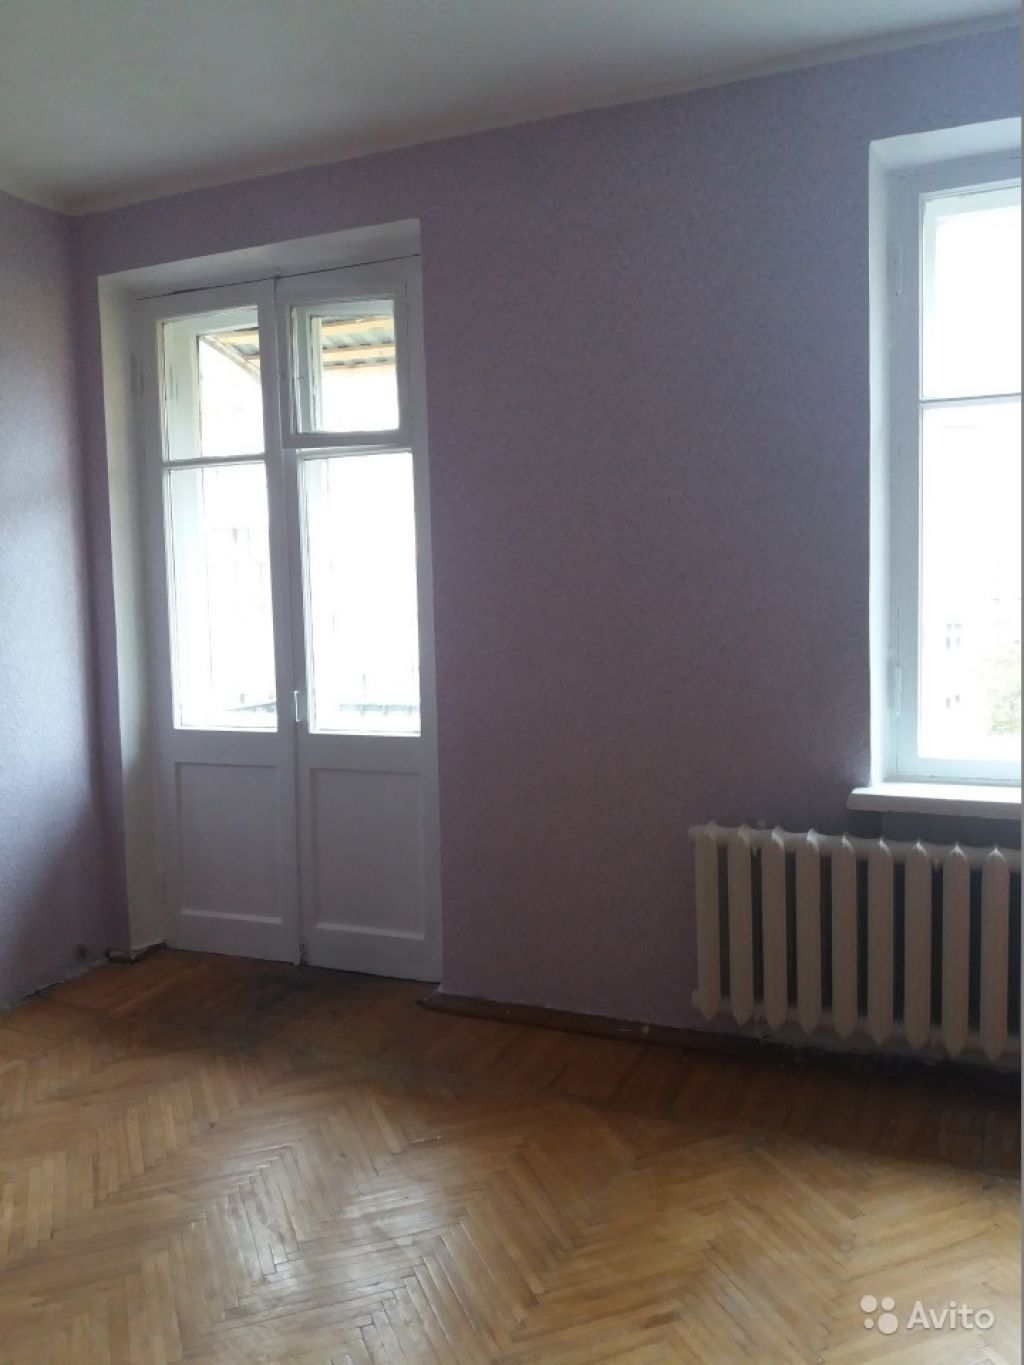 Продам комнату Комната 19.9 м² в 3-к квартире на 5 этаже 5-этажного блочного дома в Москве. Фото 1